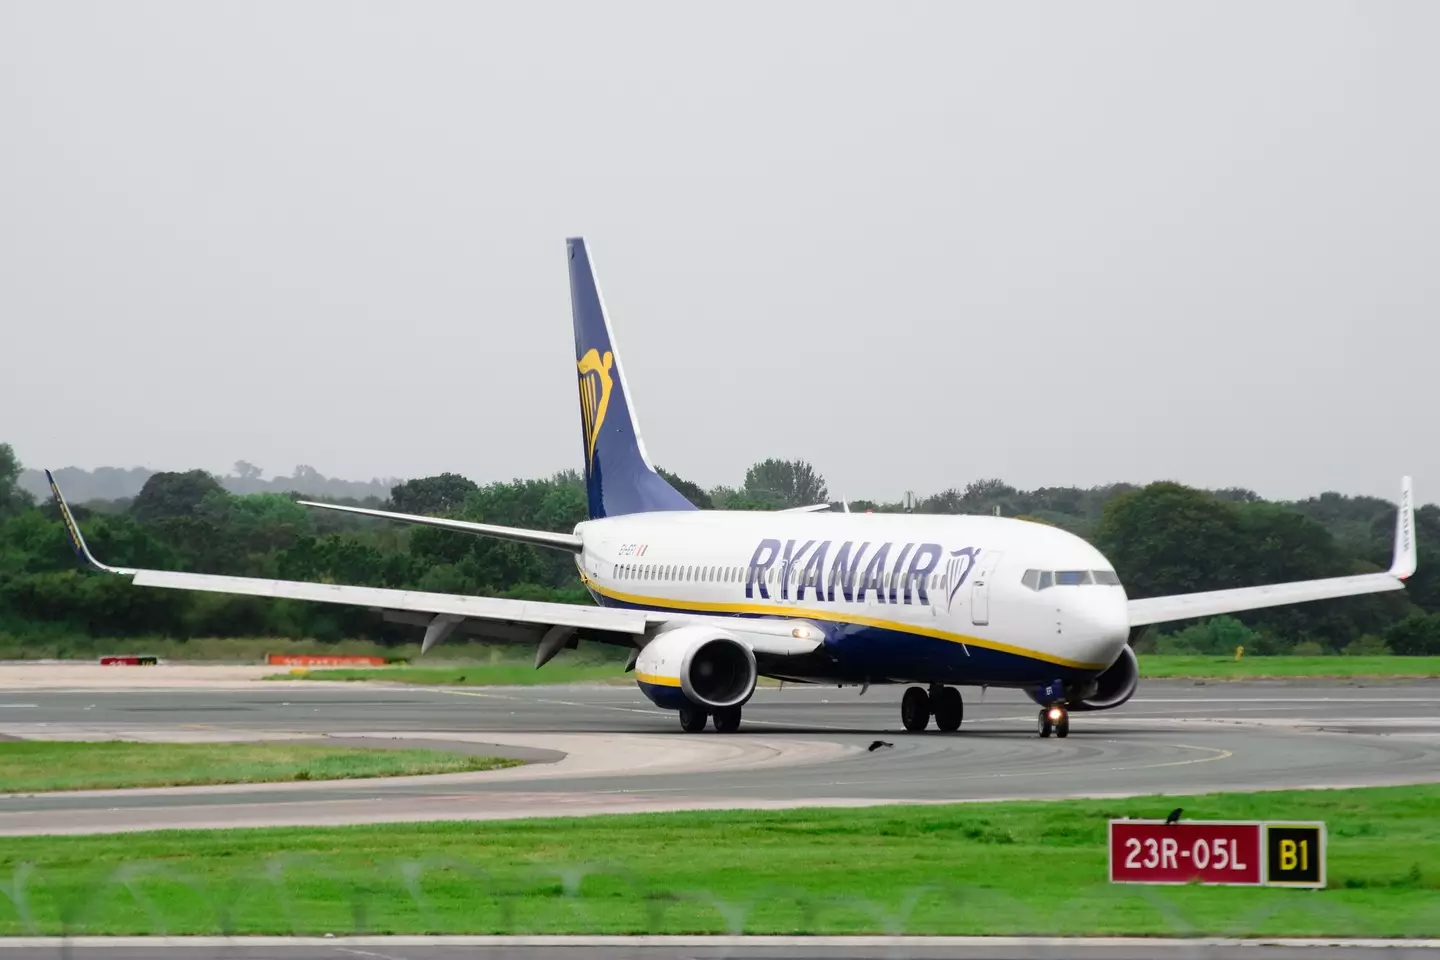 The strikes may hinder Ryanair's coronavirus recovery.